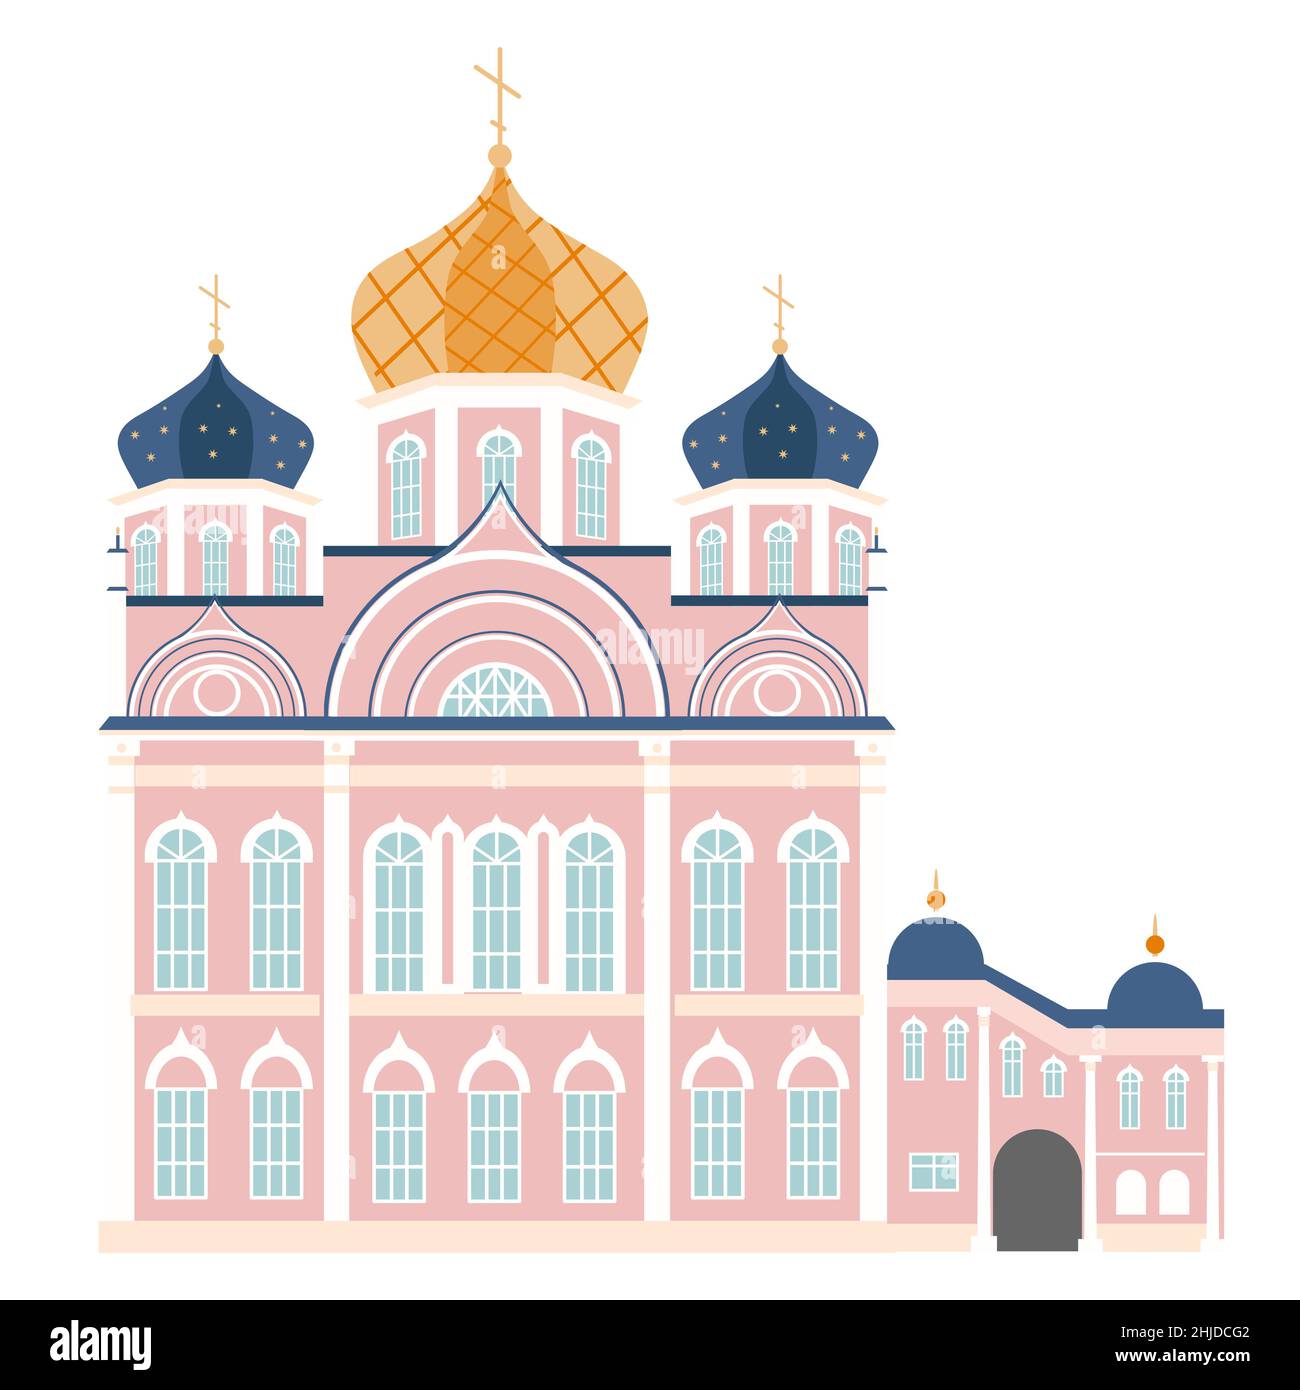 Isolieren Sie die Illustration der orthodoxen Kirche. Russische Kathedrale. Flacher Style Stock Vektor